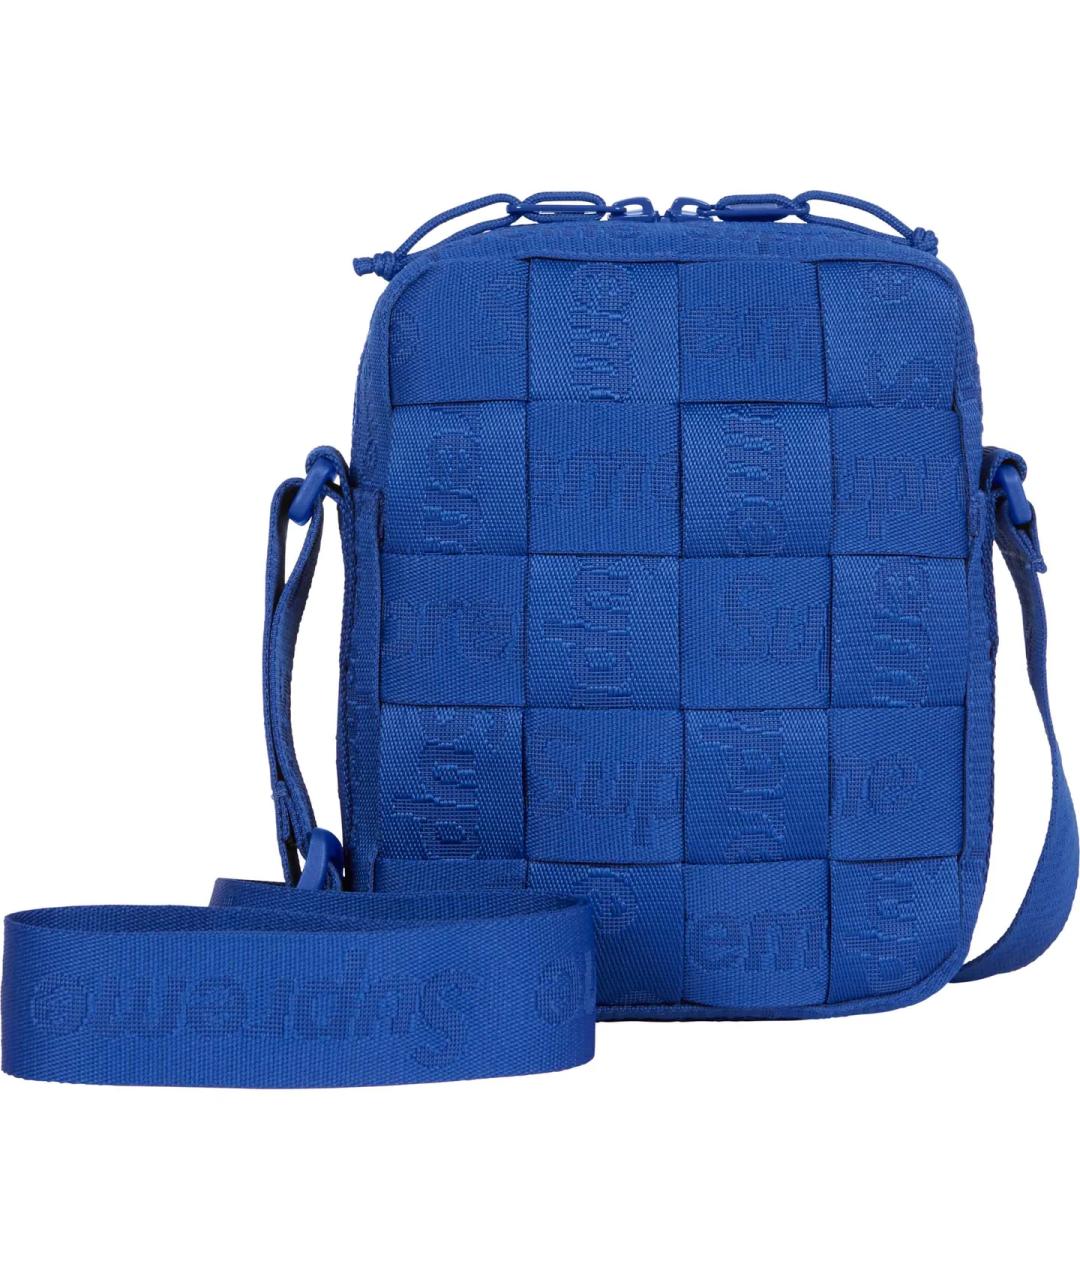 SUPREME Синяя жаккардовая сумка на плечо, фото 1